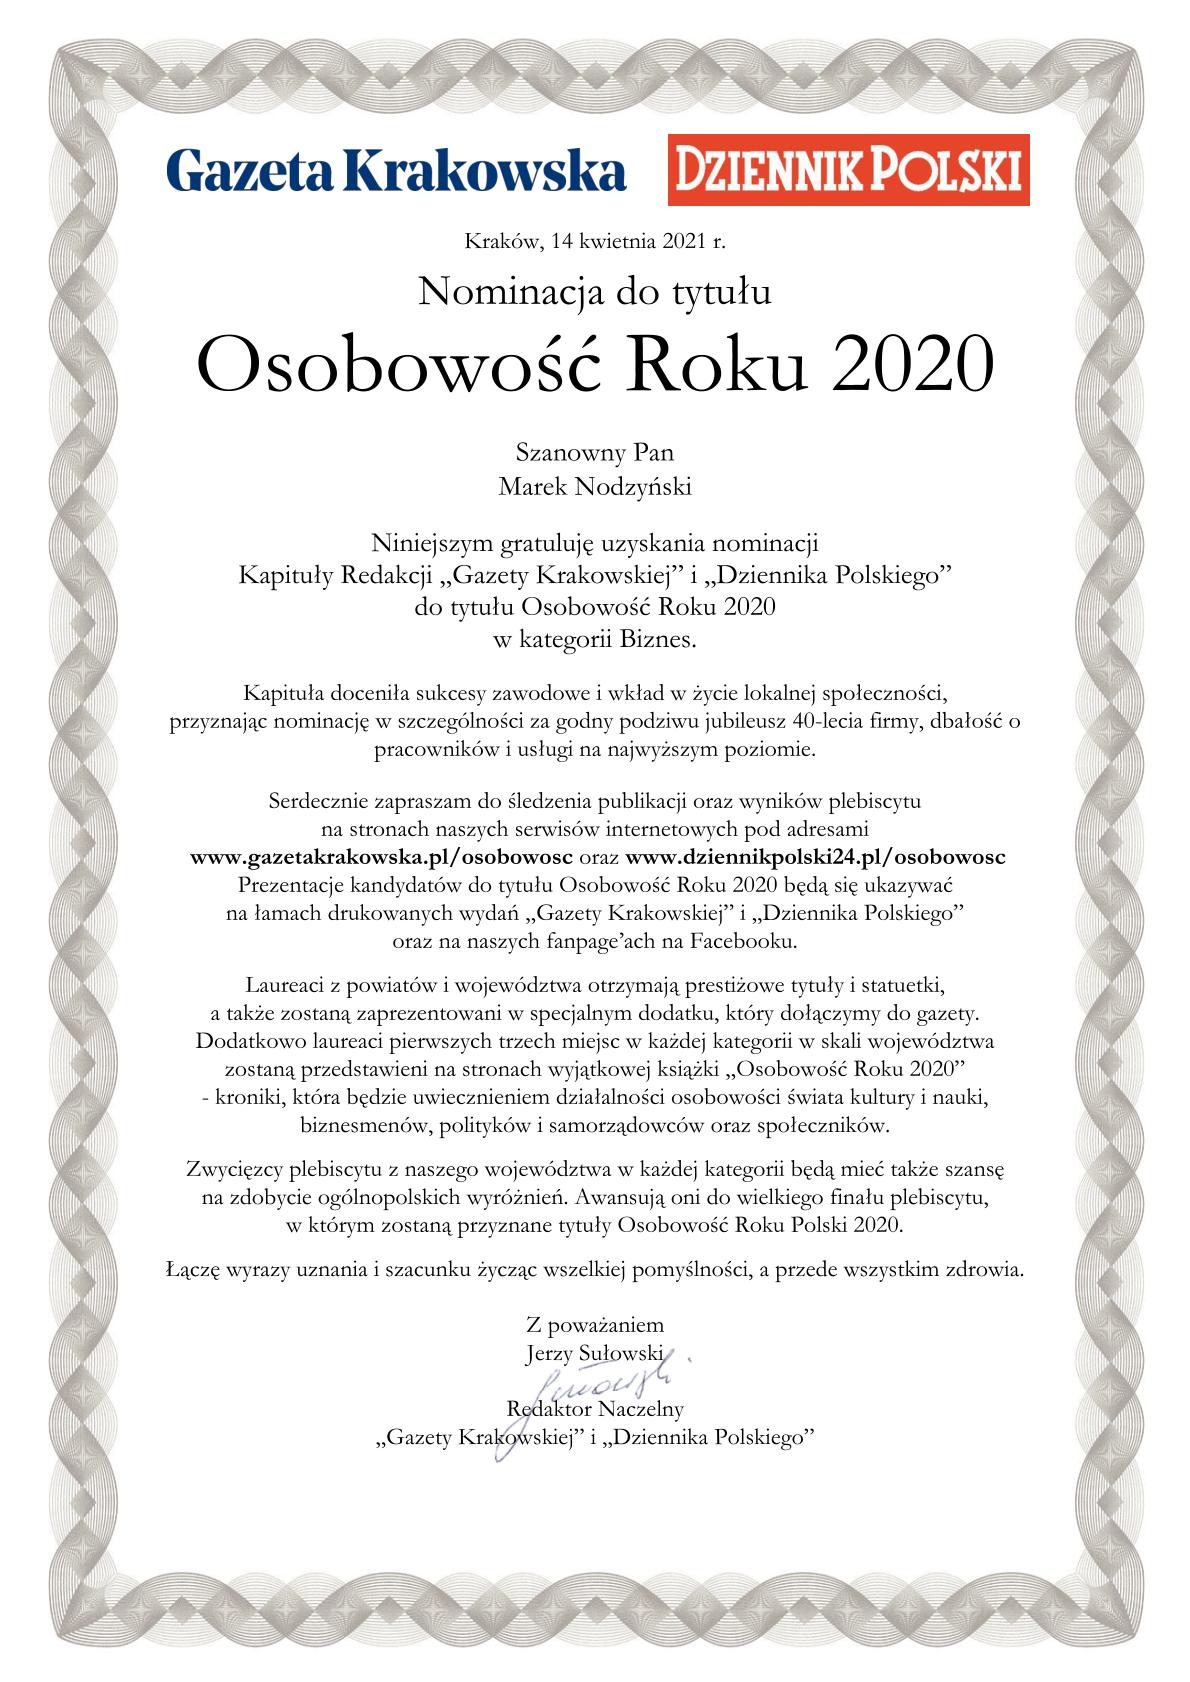 Nominacja do nagrody Osobowości Roku 2020.